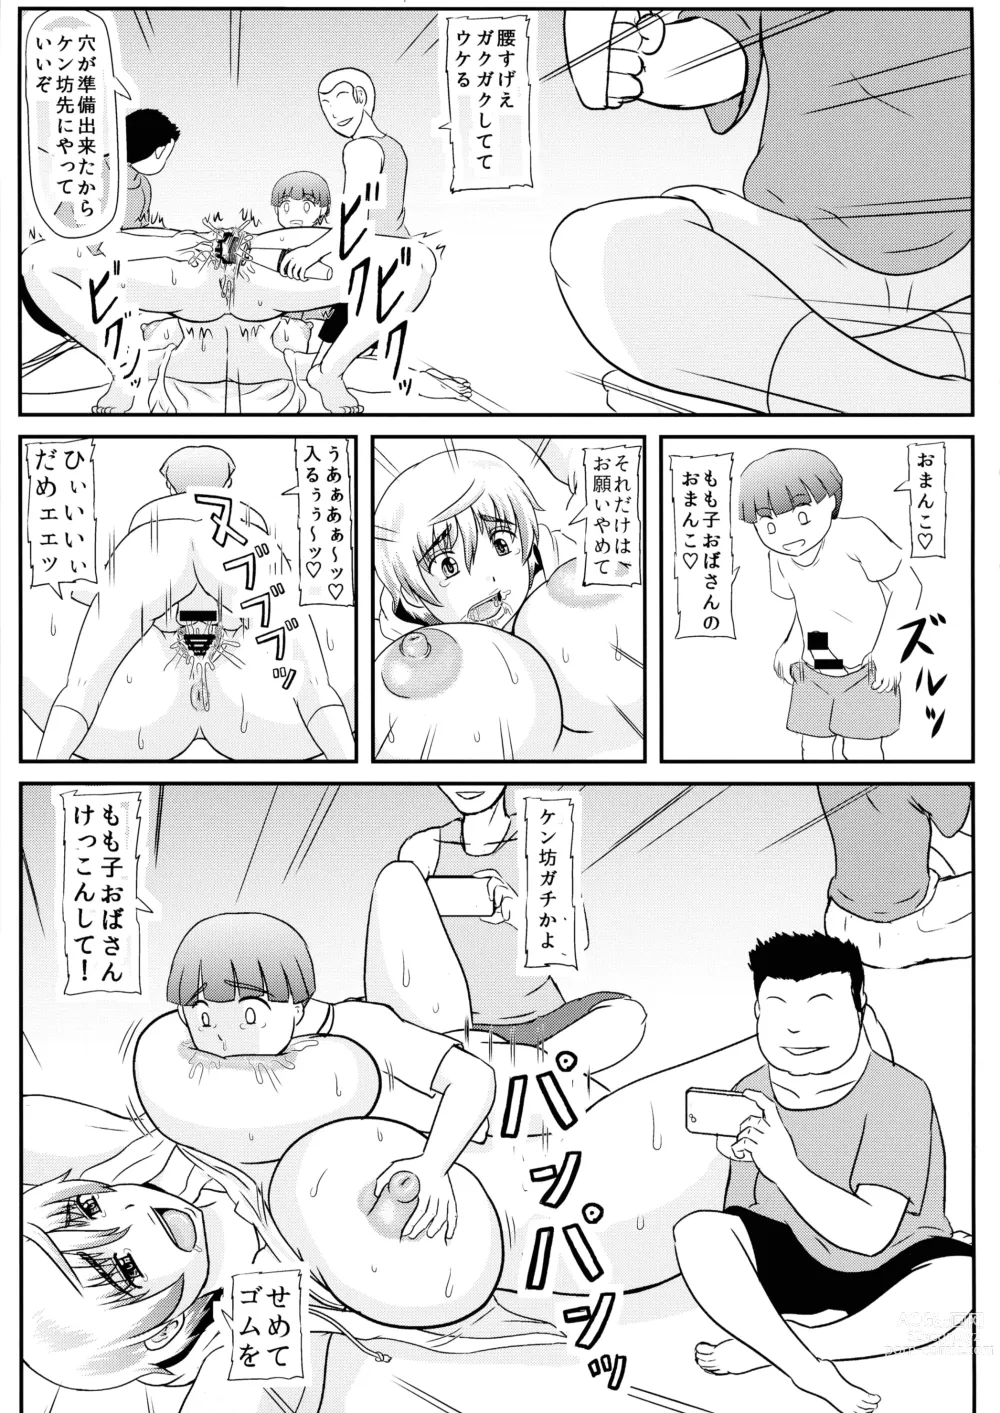 Page 7 of doujinshi Mama ga Shinyuu ni Kowasareta.